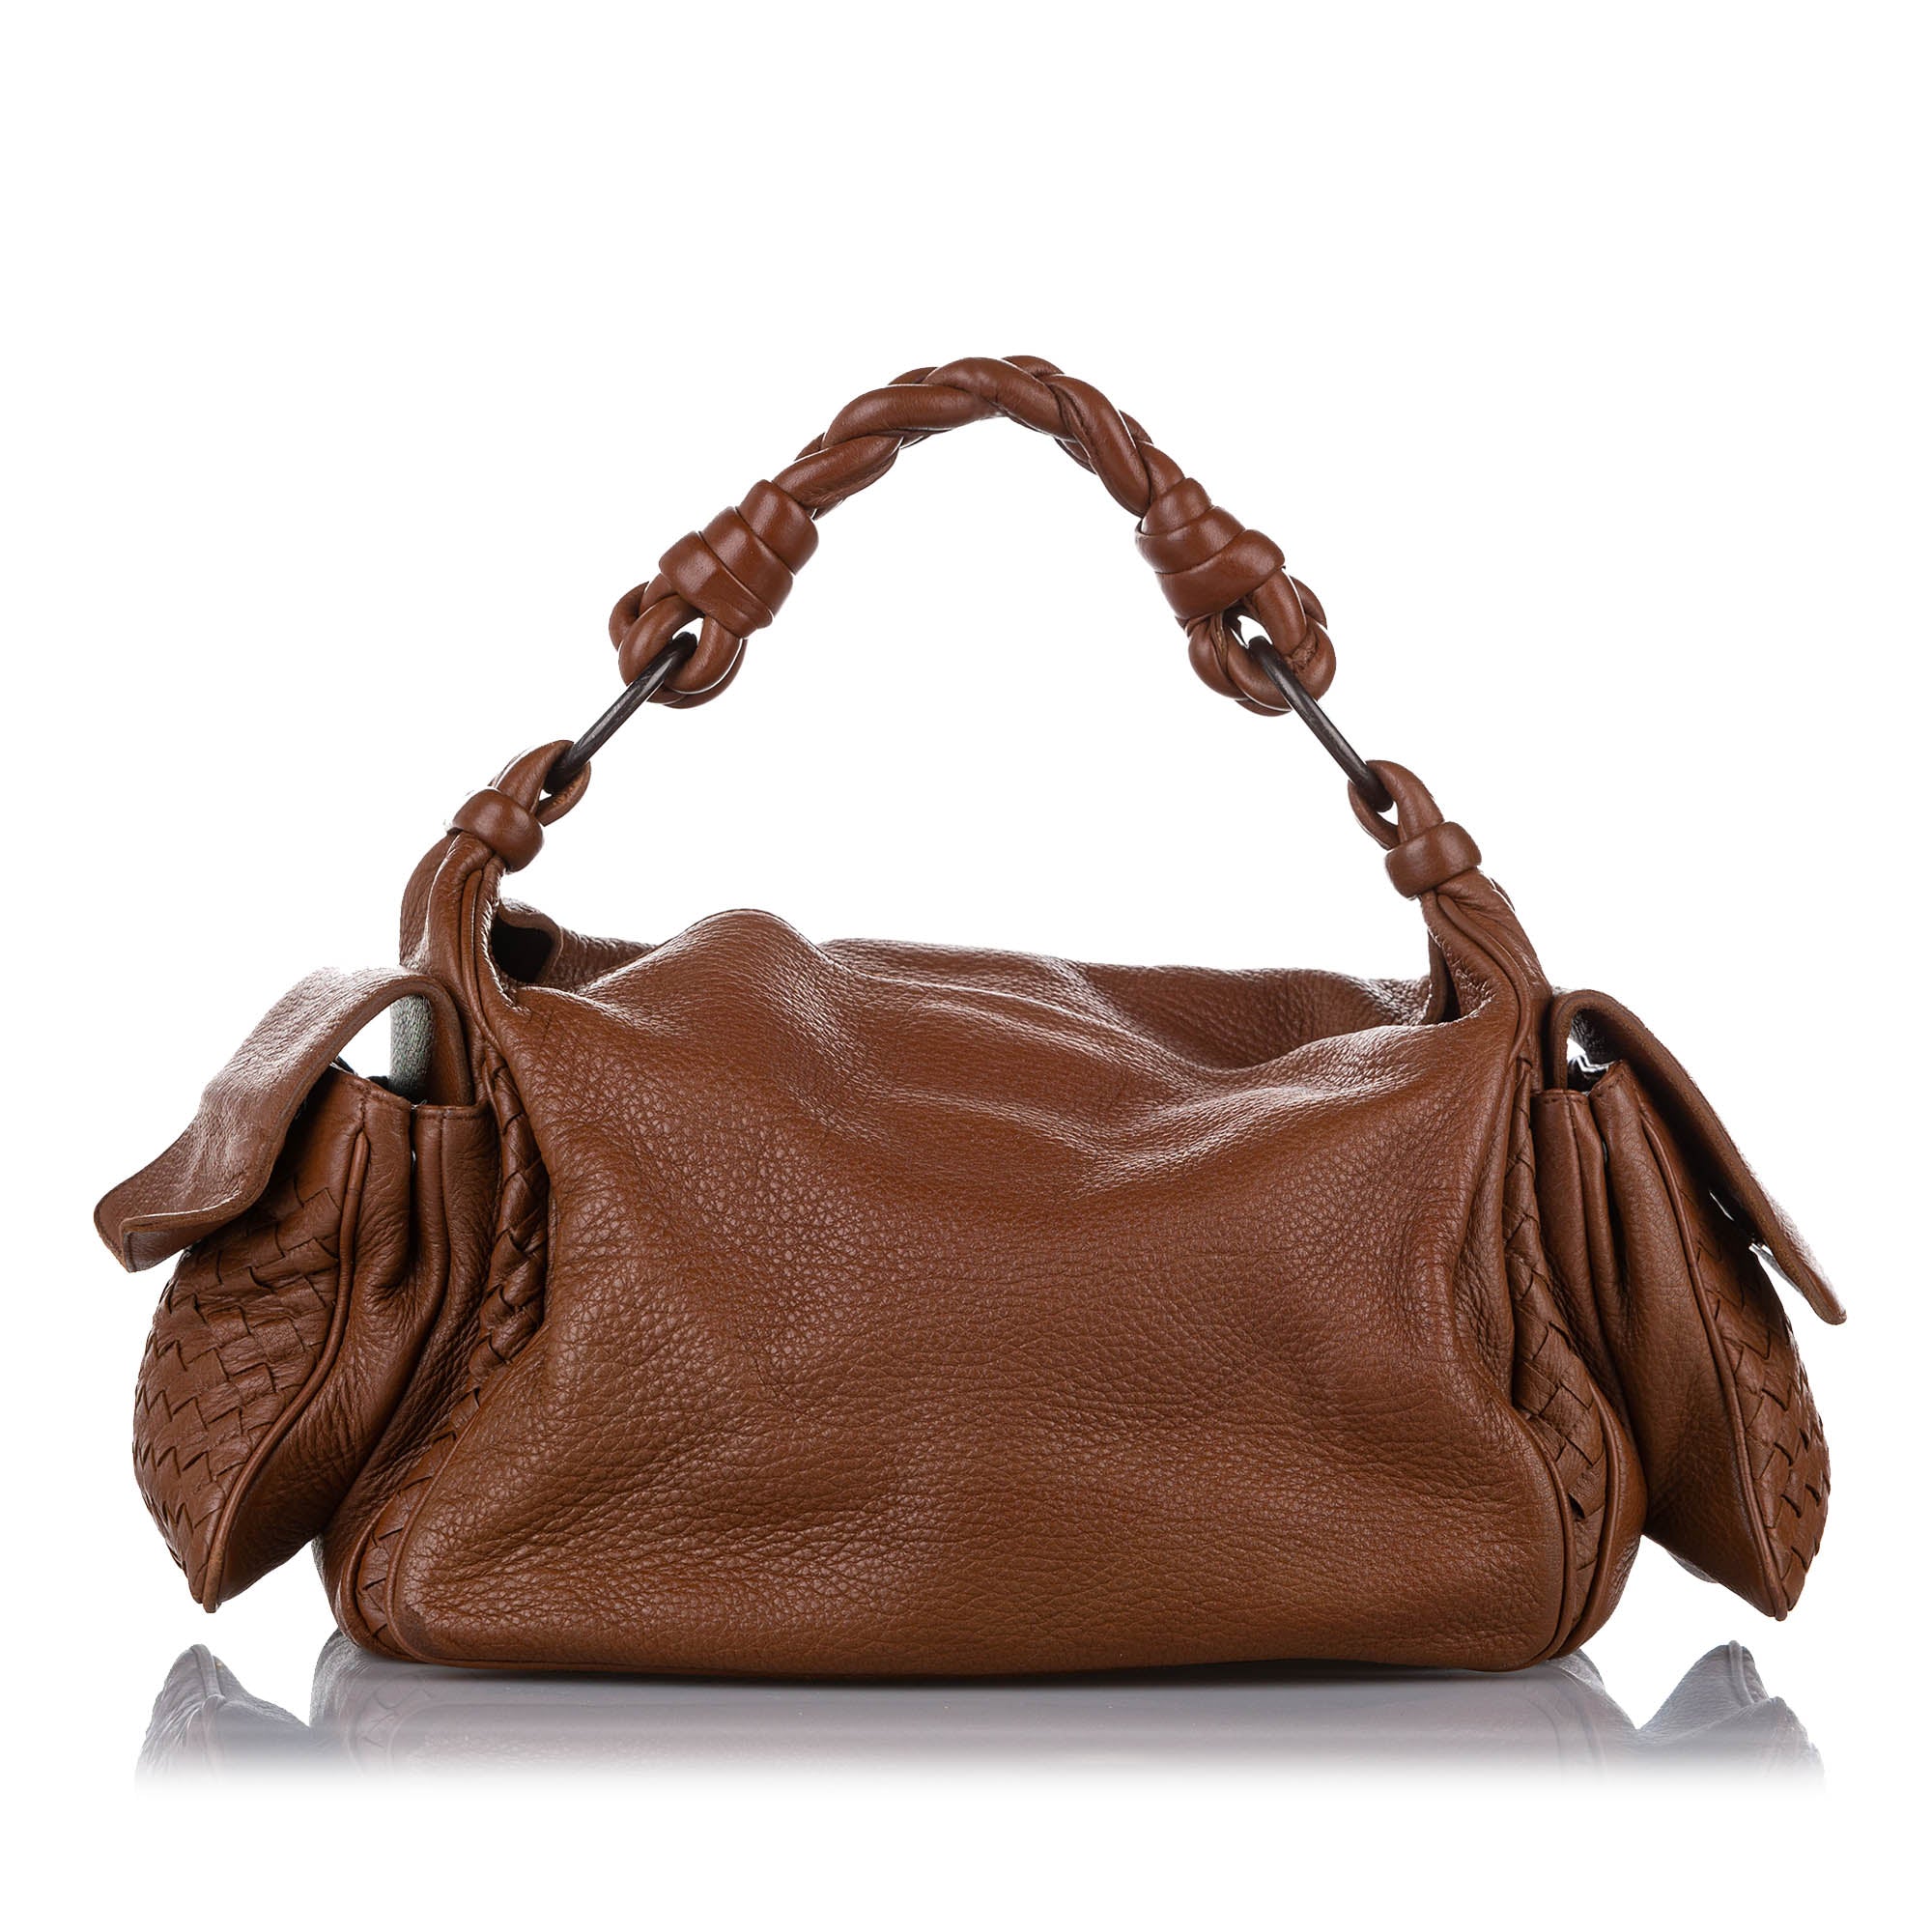 Brown Bottega Veneta Intrecciato Leather Crossbody Bag, RvceShops Revival